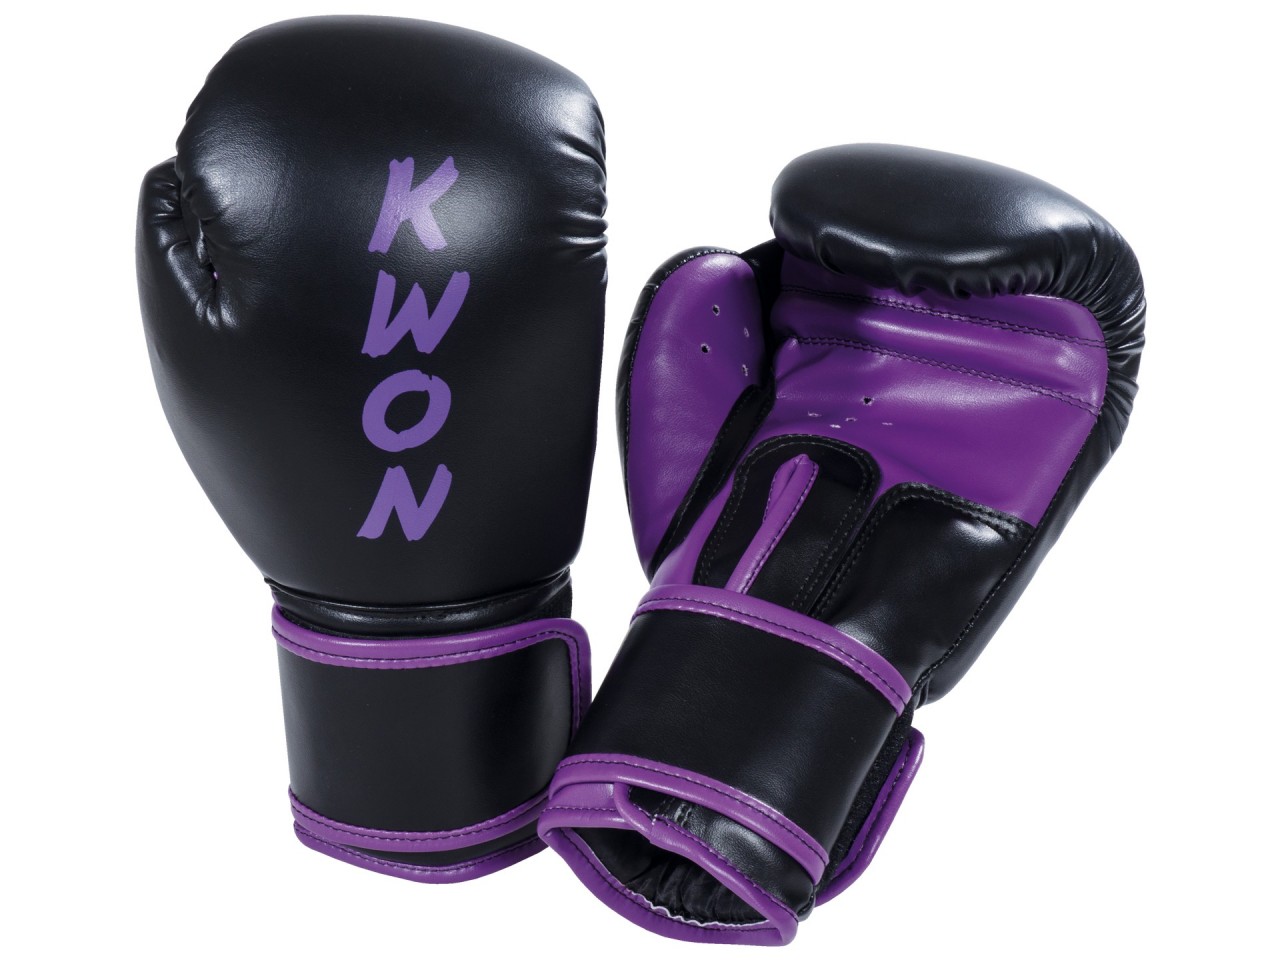 KWON Boxhandschuh Training Light von KWON KG